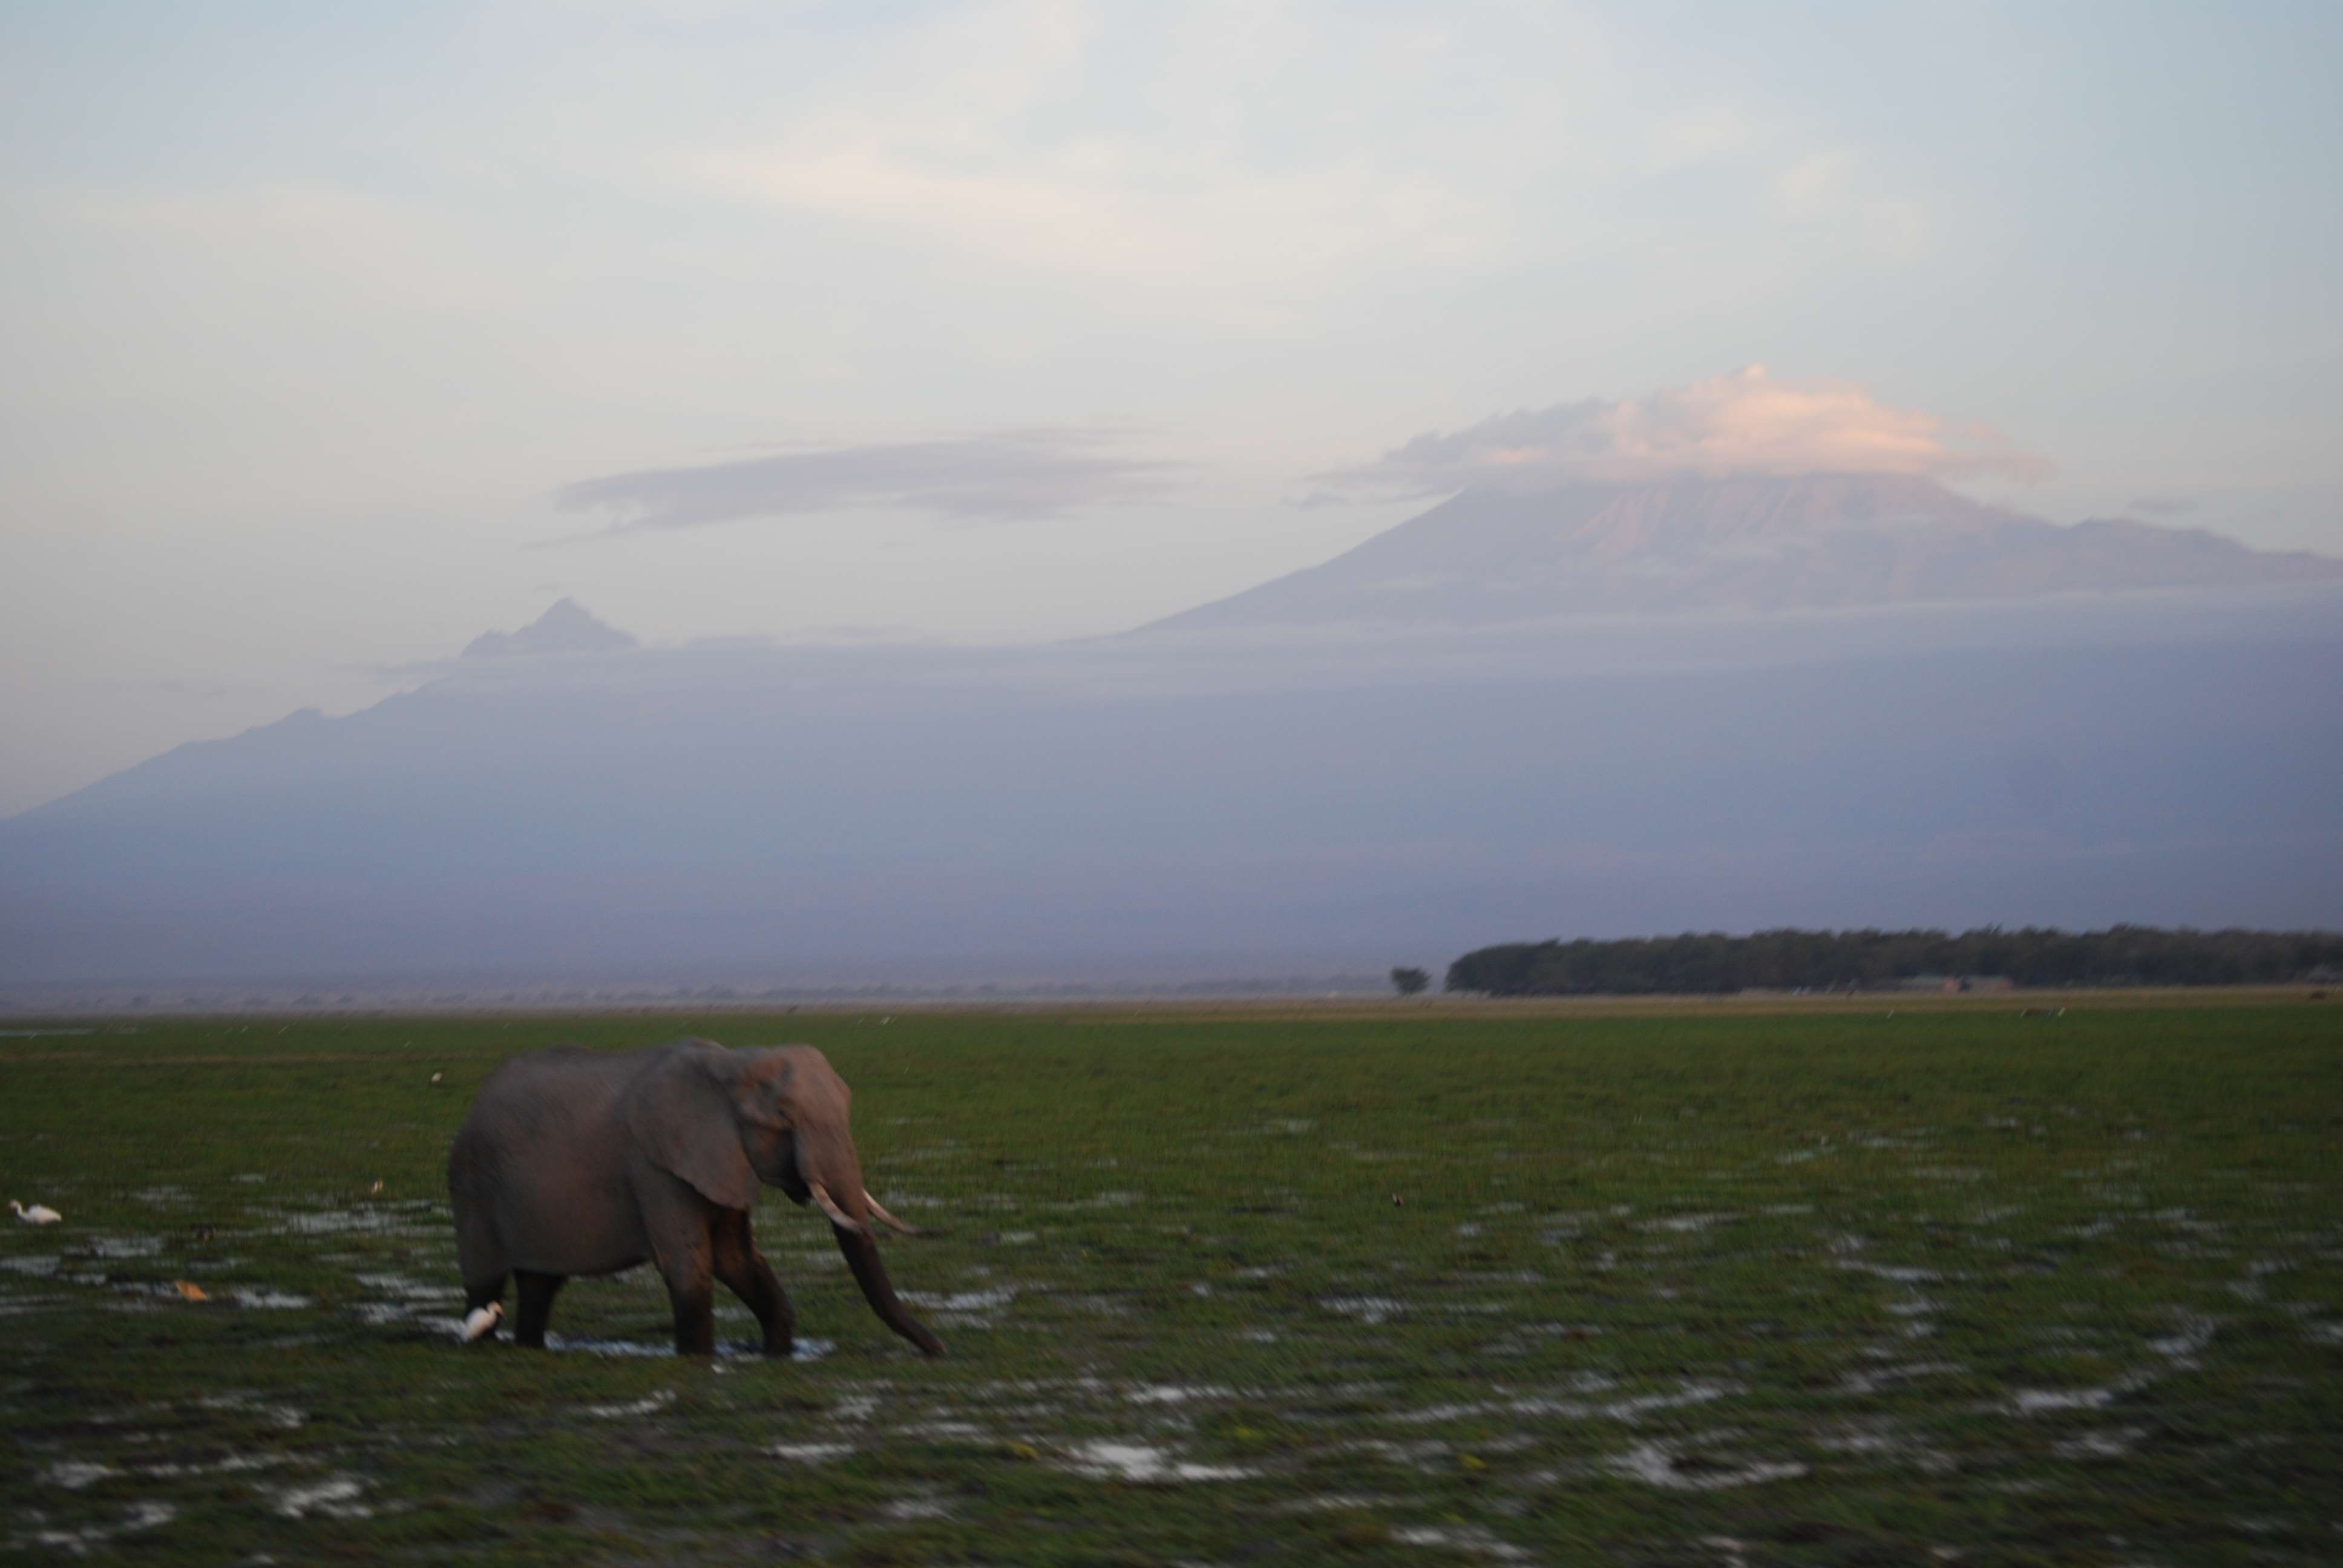 Kenia una experiencia inolvidable - Blogs de Kenia - Amboseli, el descubrimiento de Africa (8)